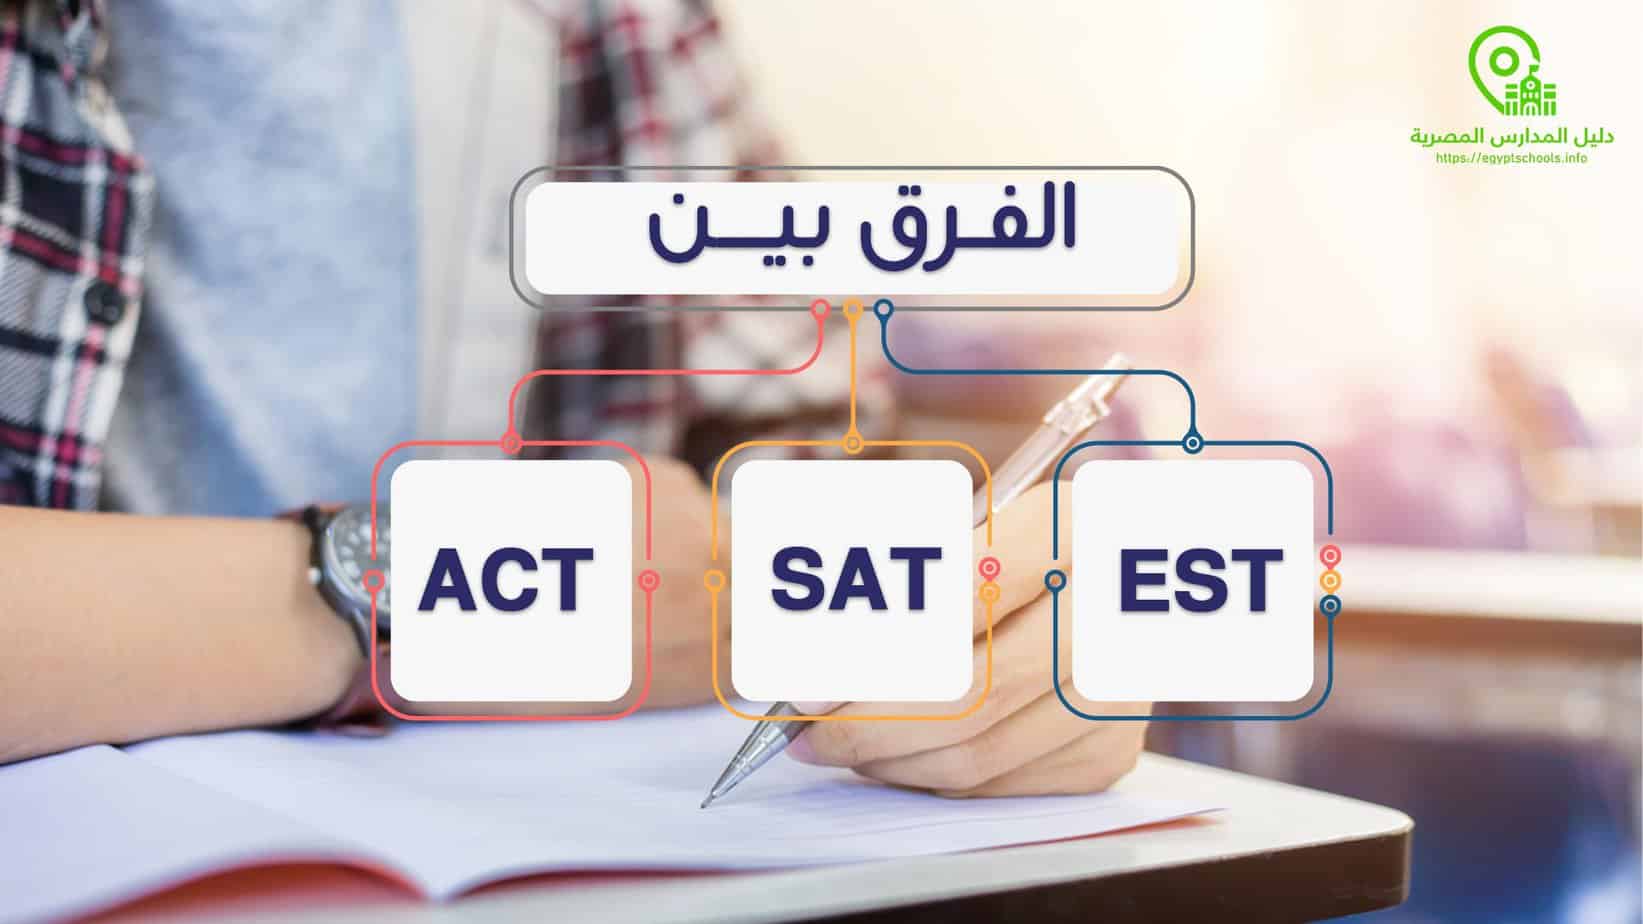 الفرق بين امتحان Act و SAT و EST